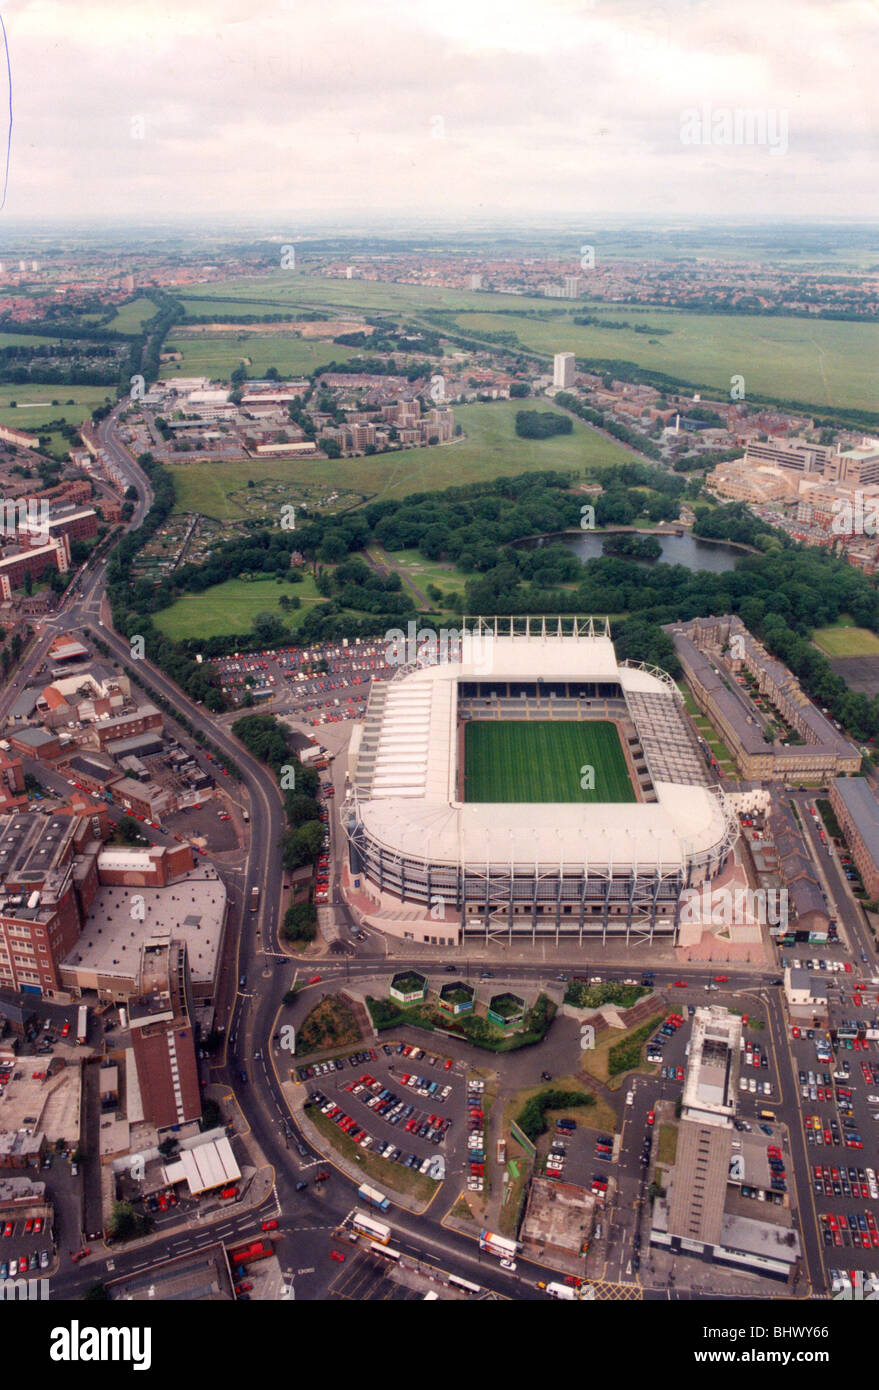 Eine Antenne Bild von St James Park ca. 07.11.96 von der Zeit Newcastle hatte als neue Kraft in der Premier League etabliert, St James' Park wandte sich zu einem wunderbaren Ort, beide spielen und Fußball gucken. Es war eine Festung, die Elstern und eine besondere Atmosphäre geschaffen. Weitere Sanierung fand im Jahr 2000 zur Erhöhung der Kapazität um mehr als 52.000. Stockfoto